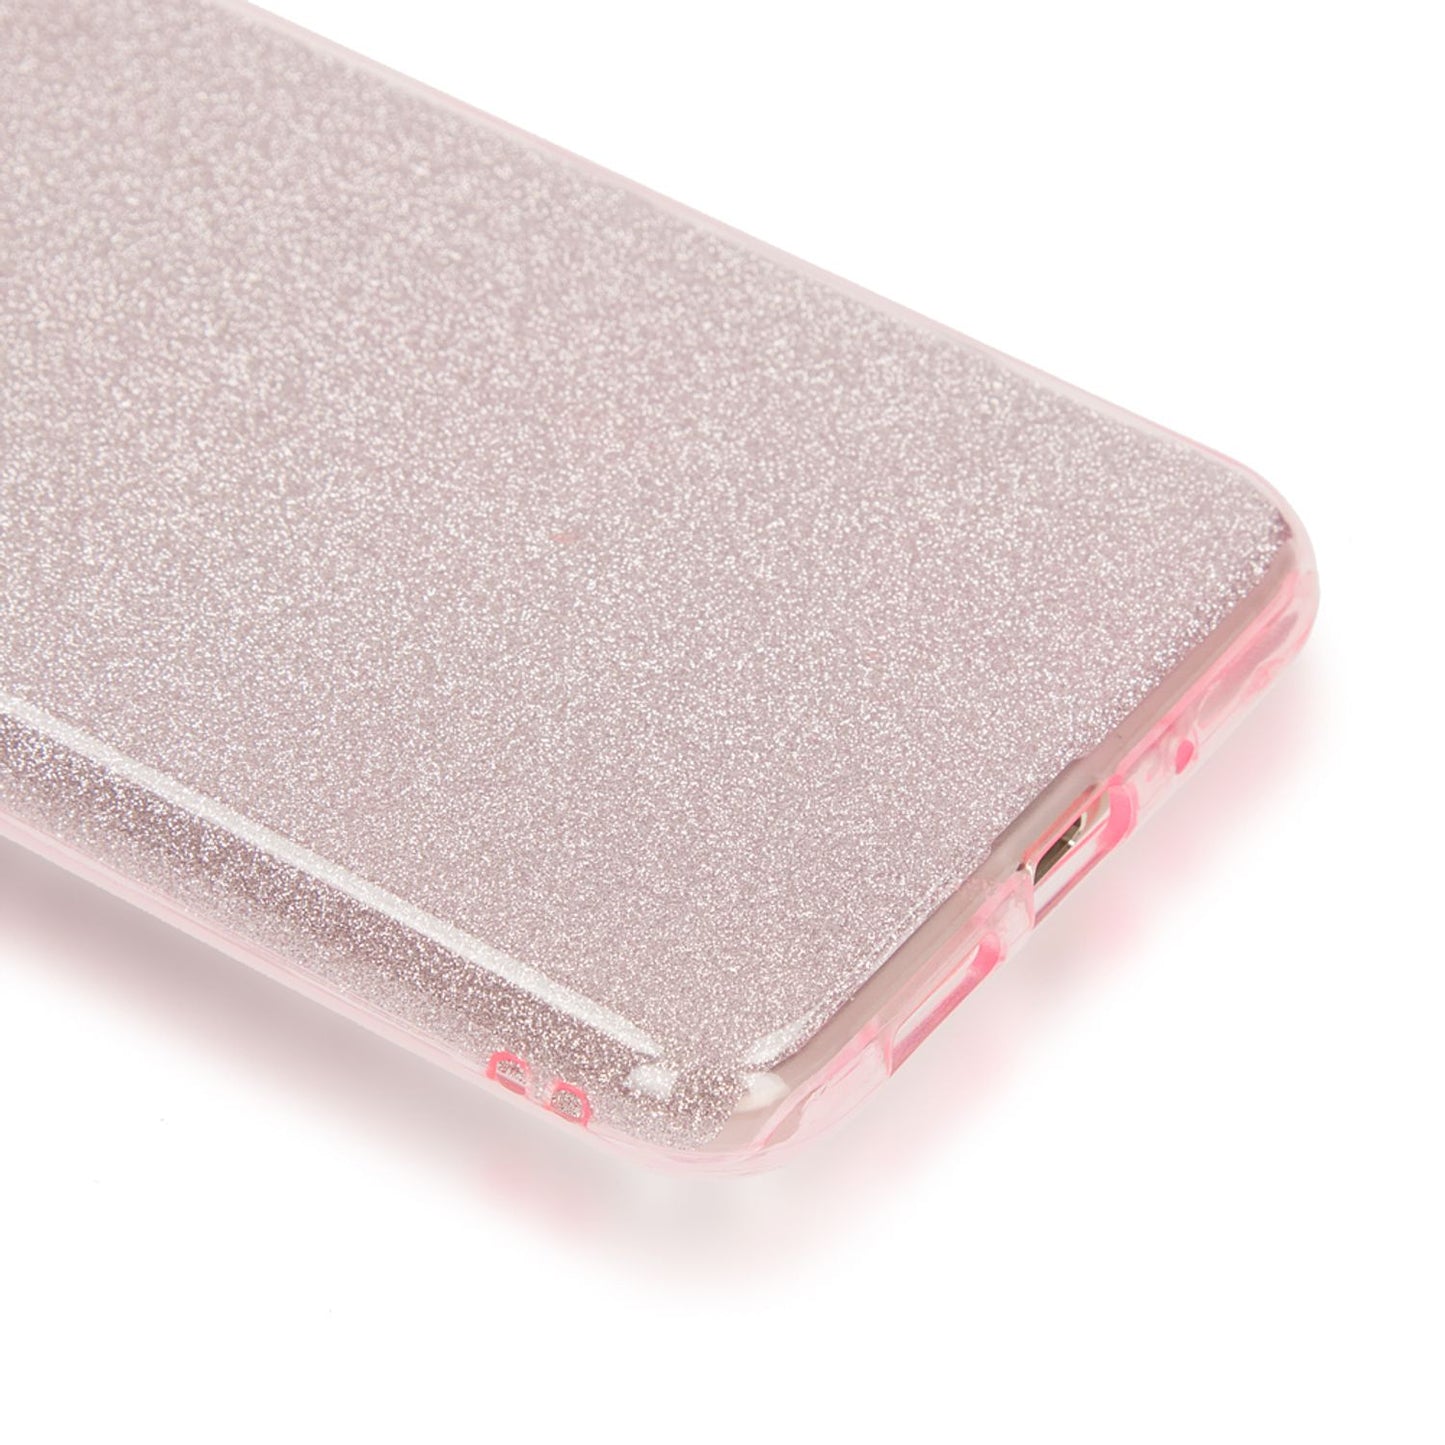 Huawei P10 Lite Handy Hülle von NALIA, Glitzer Silikon Cover Case Schutz Glitter